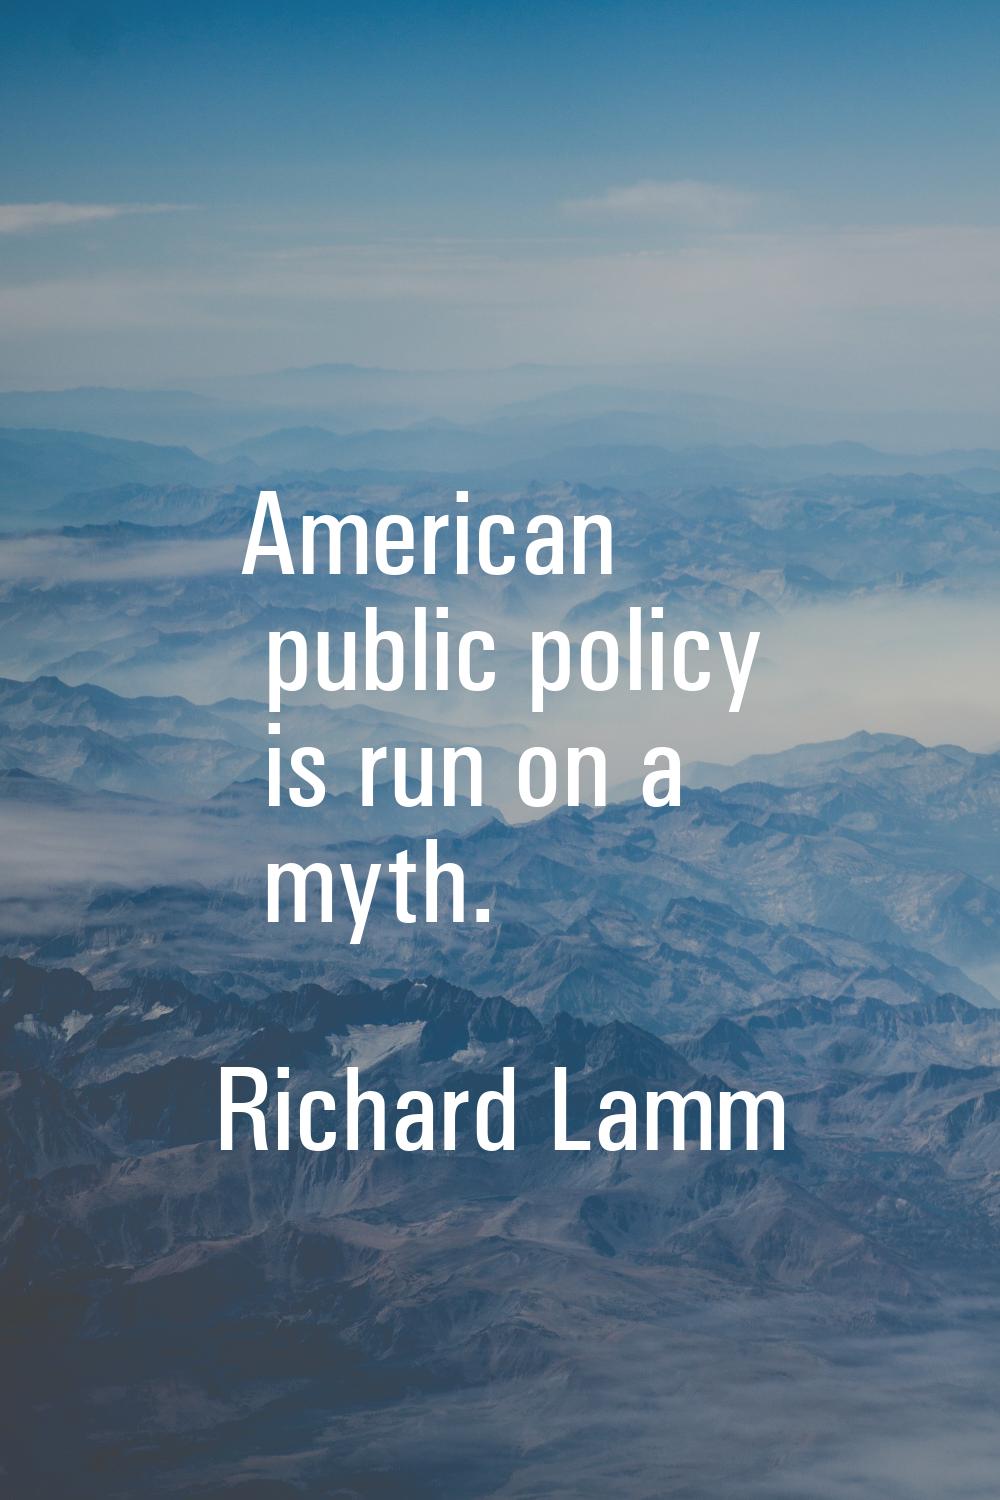 American public policy is run on a myth.